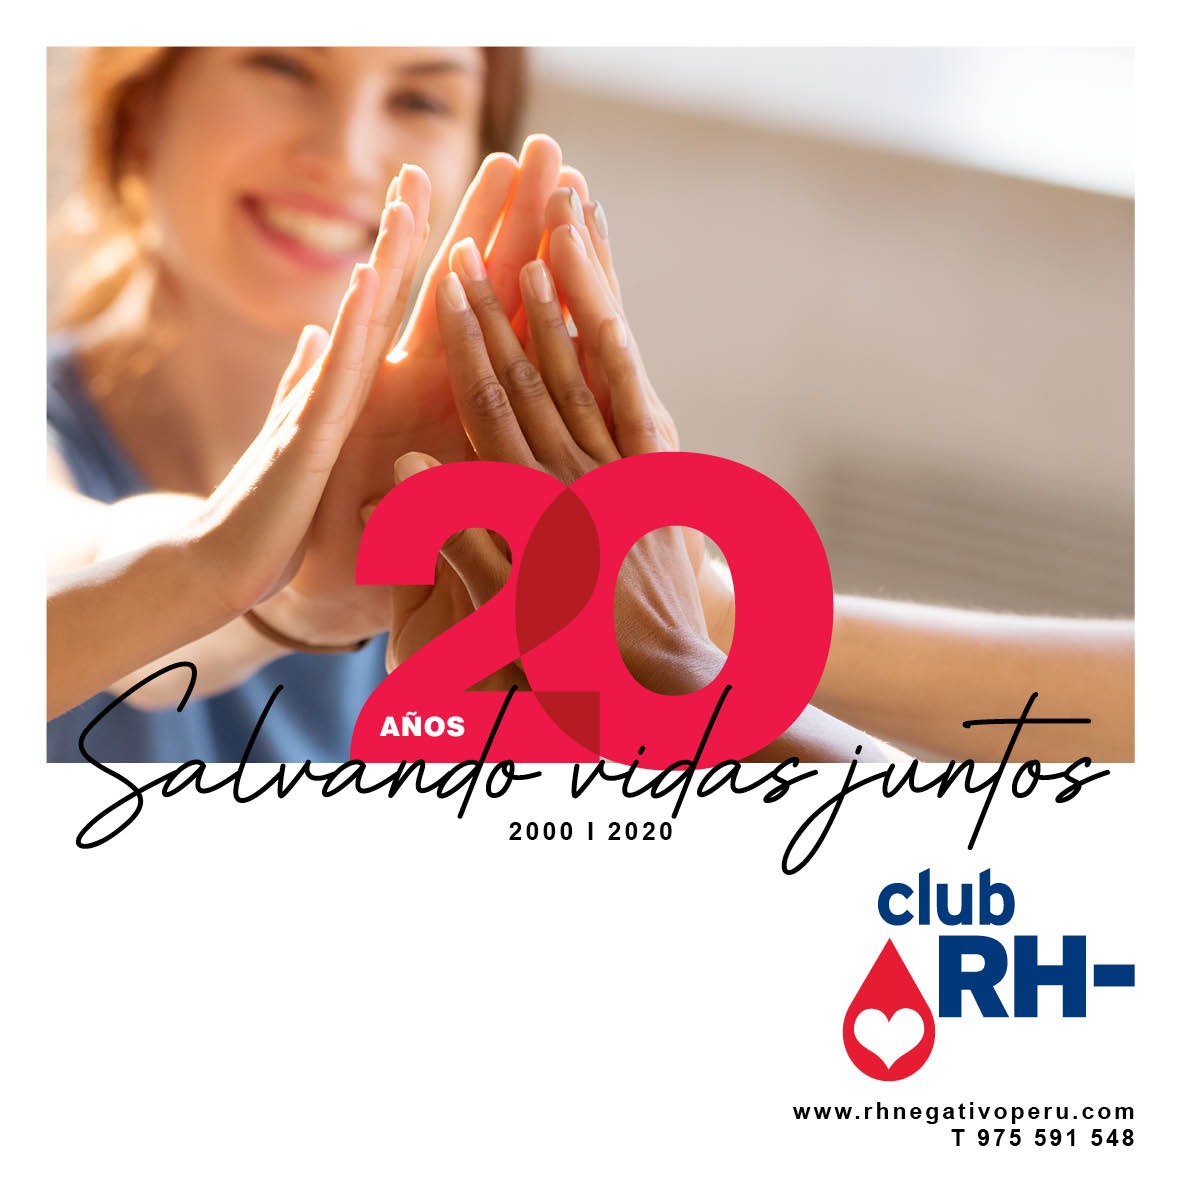 20 años Salvando Vidas Club RH Negativo del Perú